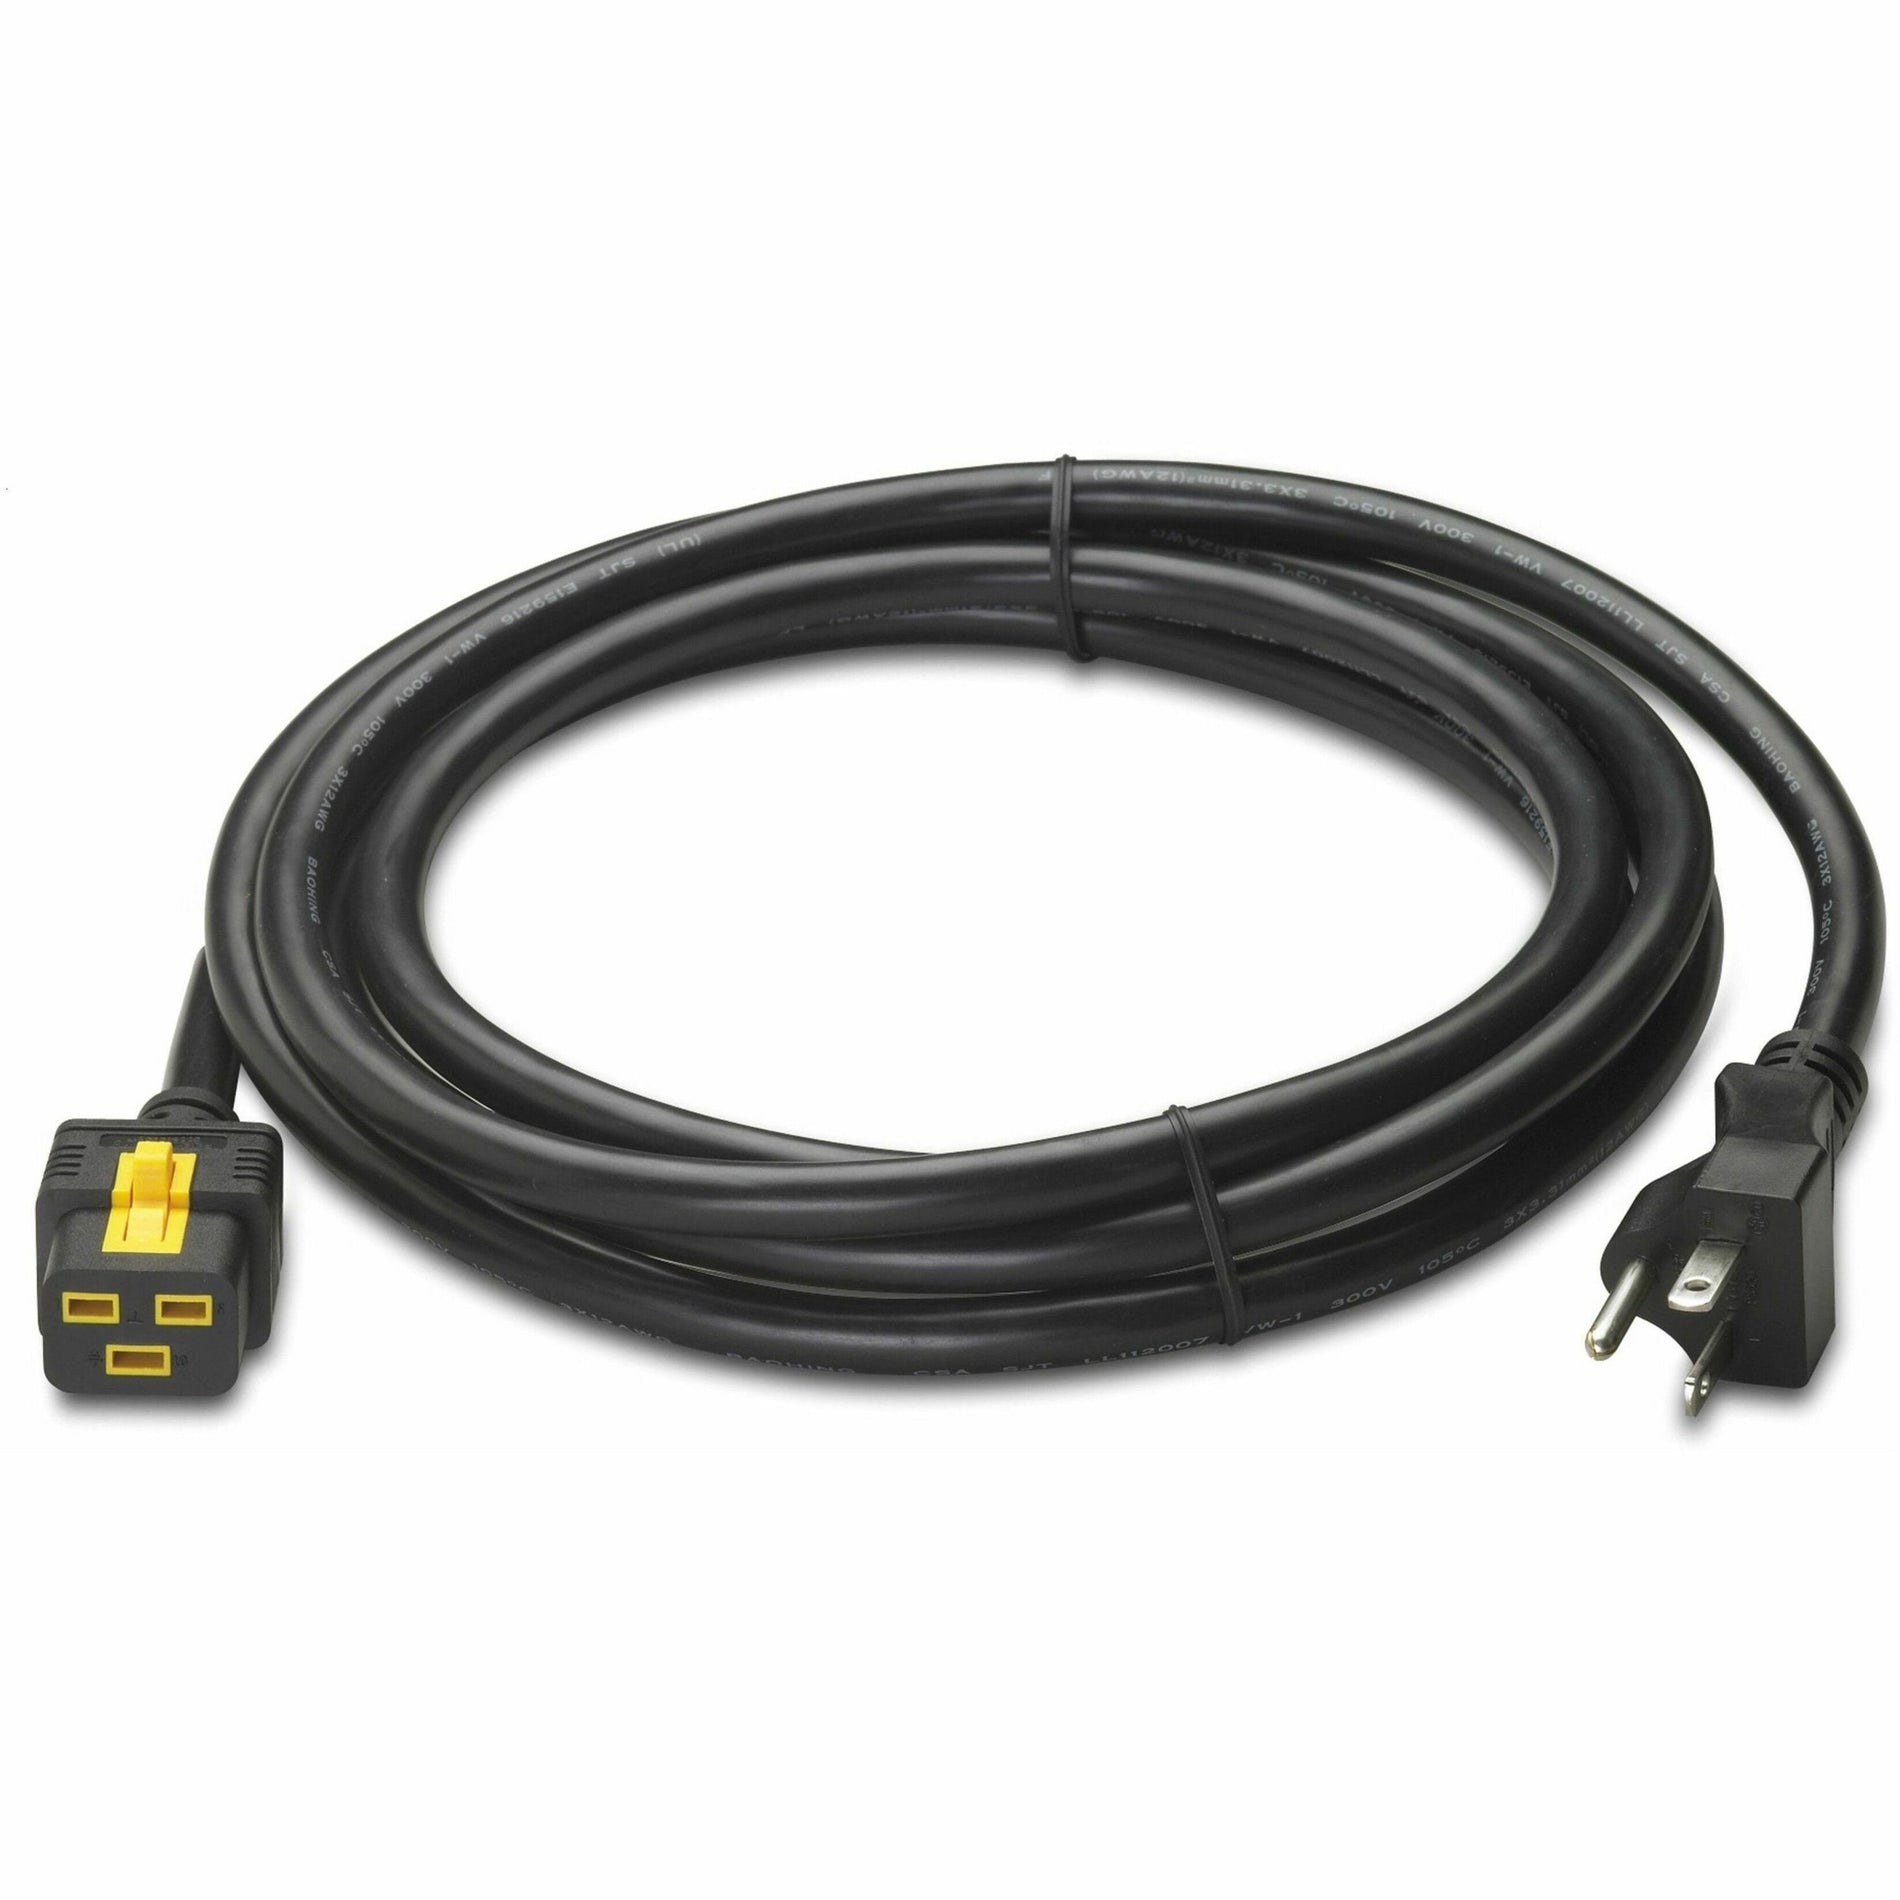 Cable de alimentación estándar APC AP8751 - Negro 3 metros de longitud de cable.